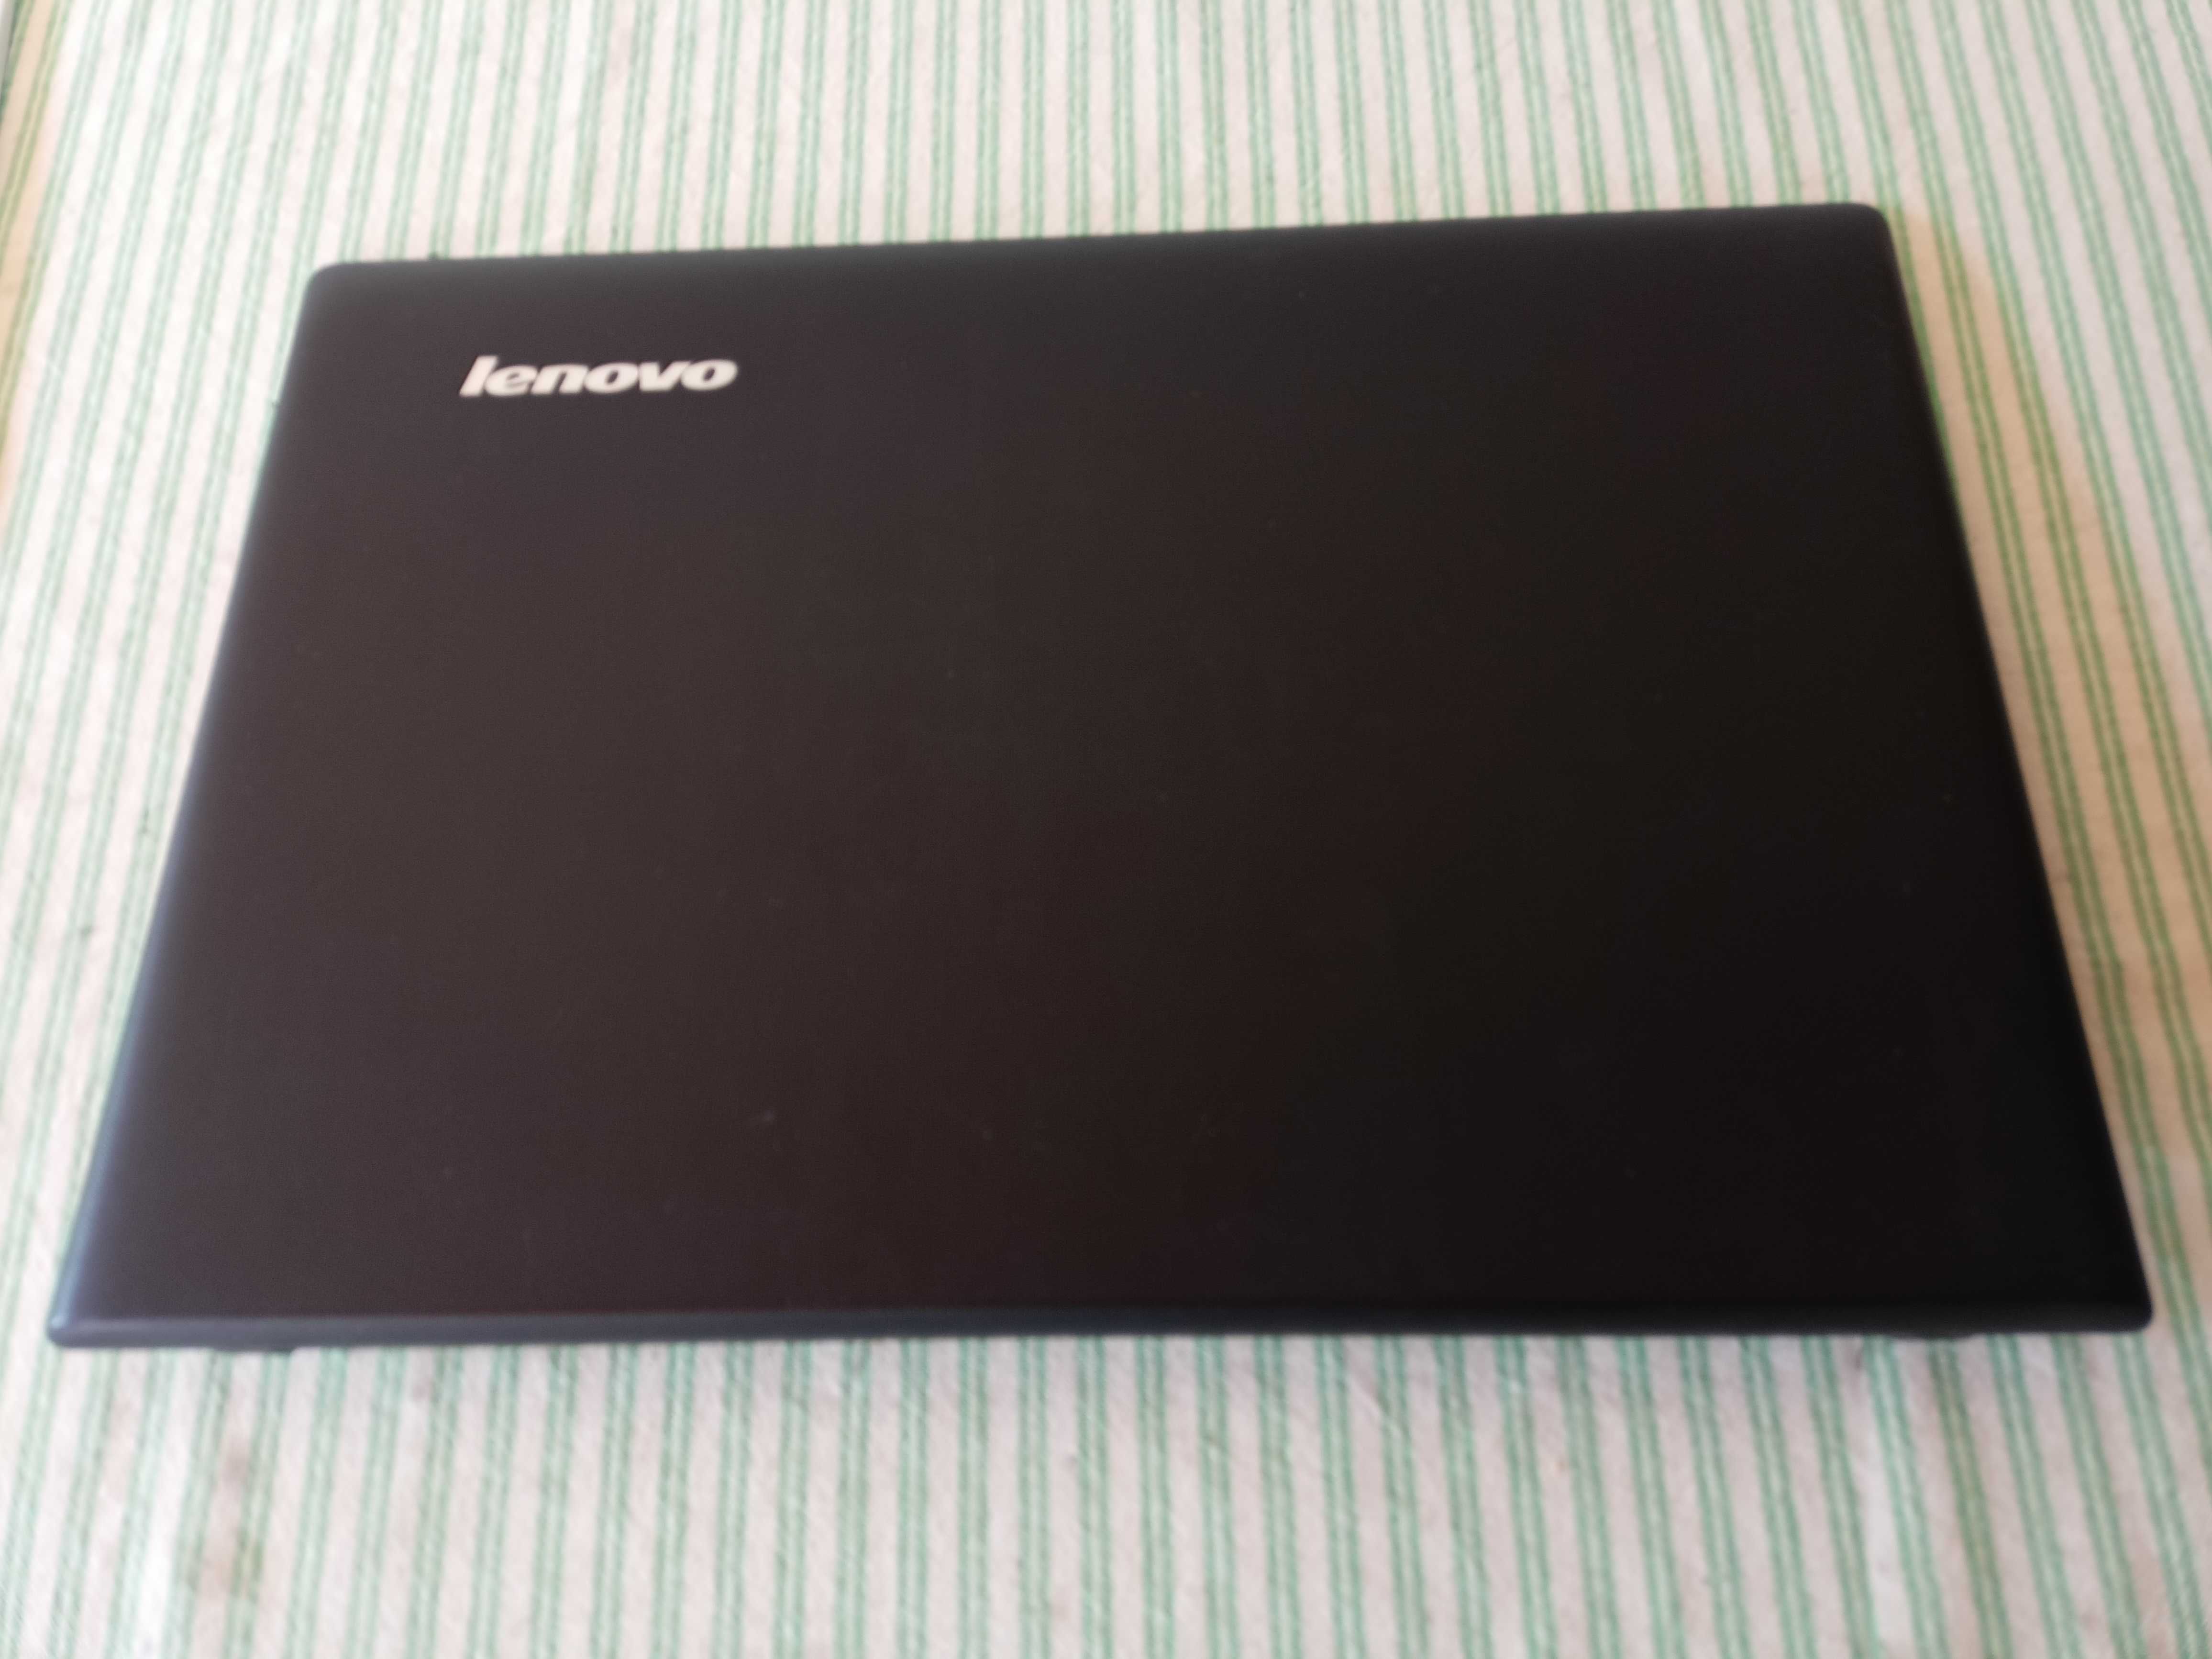 Dezmembrez Lenovo G70-70 17,3 inch - Pret Mic